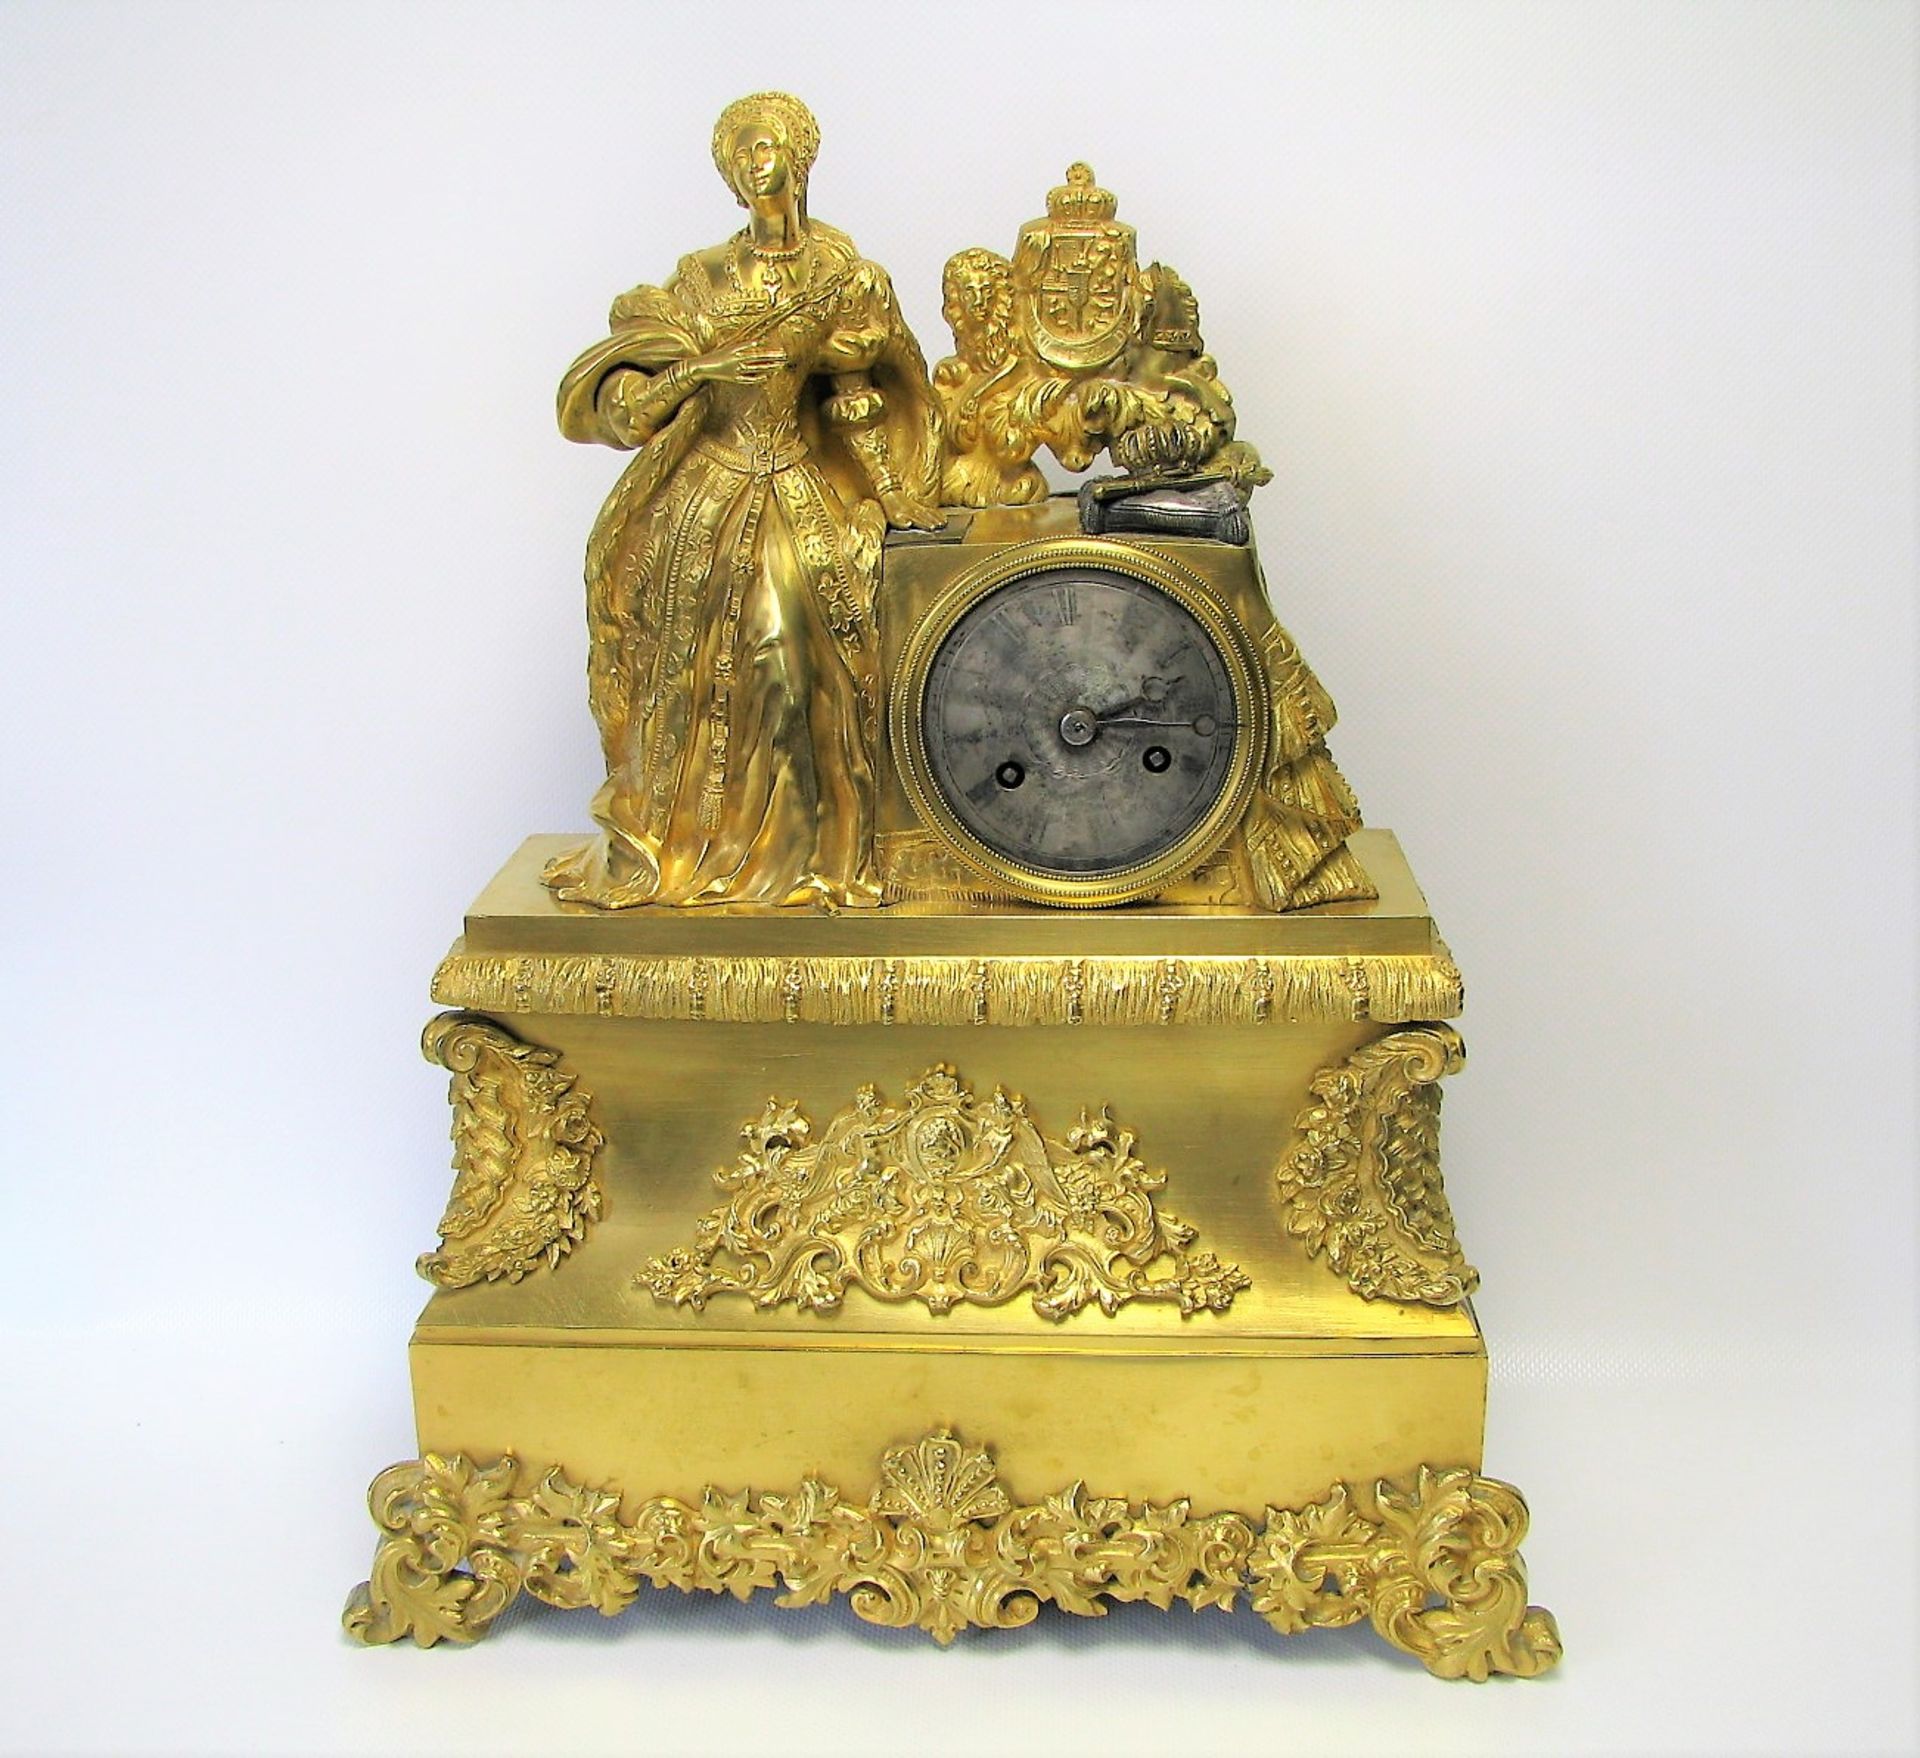 Pendule, Frankreich, um 1820/30, reich verziertes Bronzegehäuse mit Feuervergoldung,